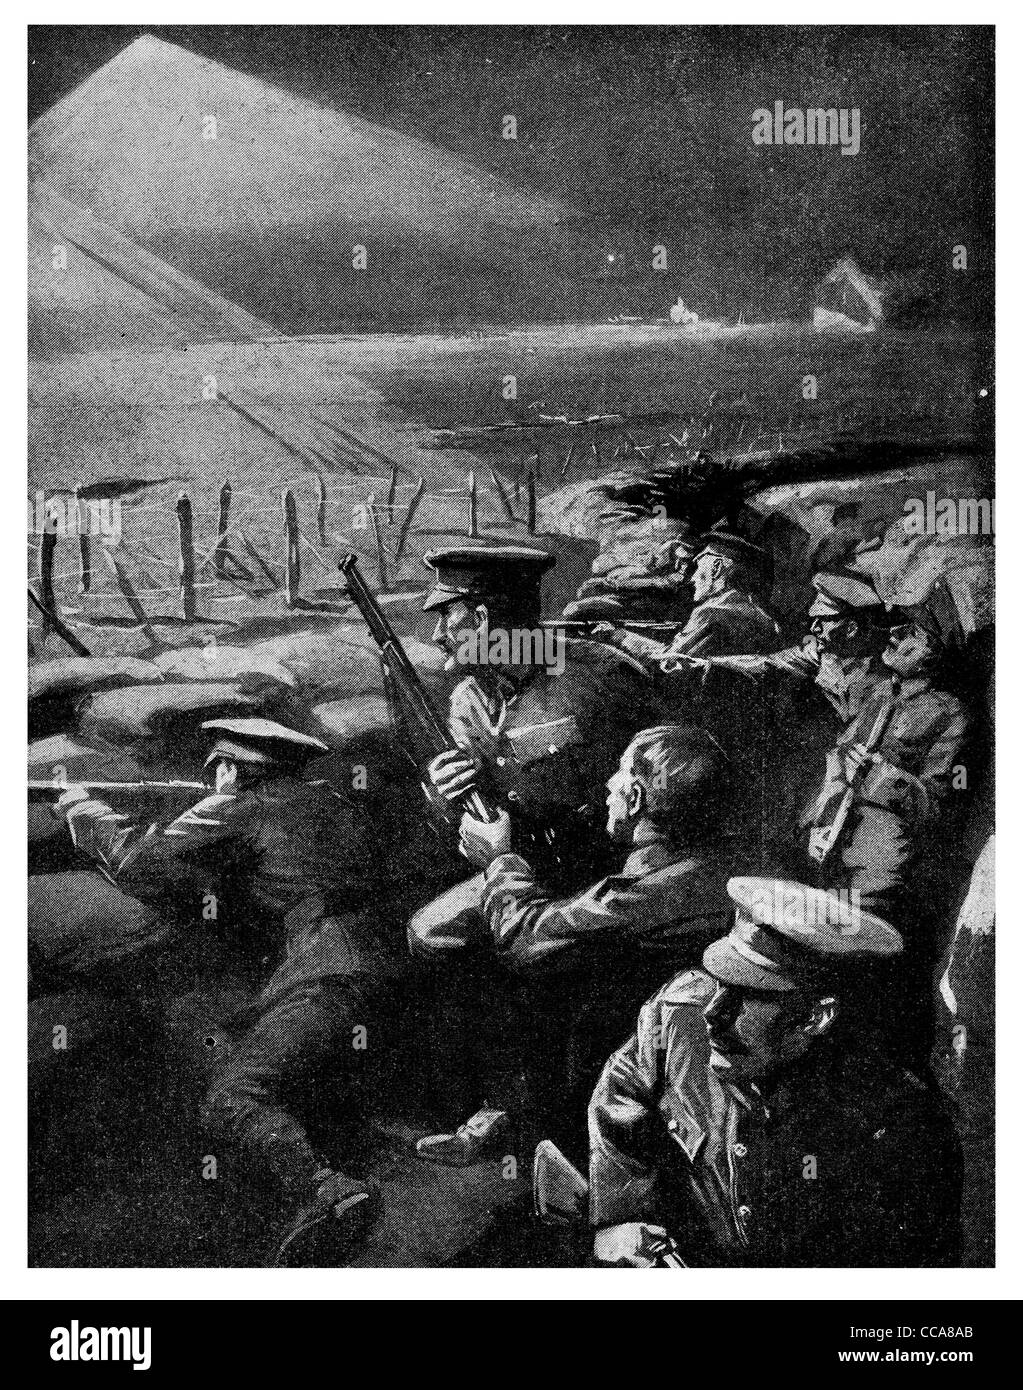 1915 cecchino britannico utilizza star shell notte di luce una guerra di trincea nemico ucciso obiettivo di tiro Ricognizione di filo spinato flare Foto Stock